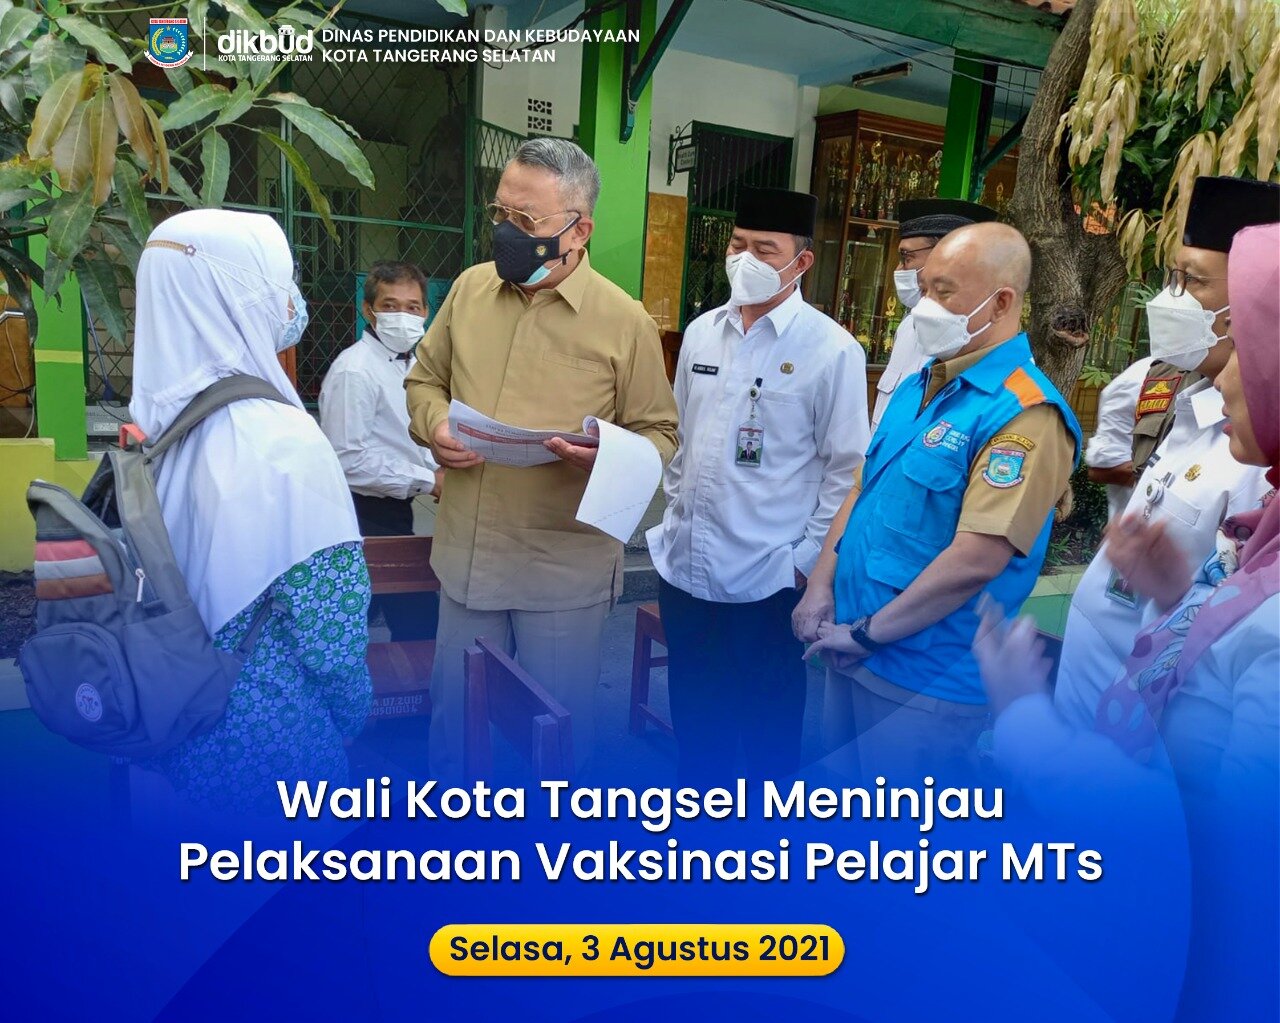 Walikota Tangerang Selatan Meninjau Pelaksanaan Vaksinasi Pelajar MTS